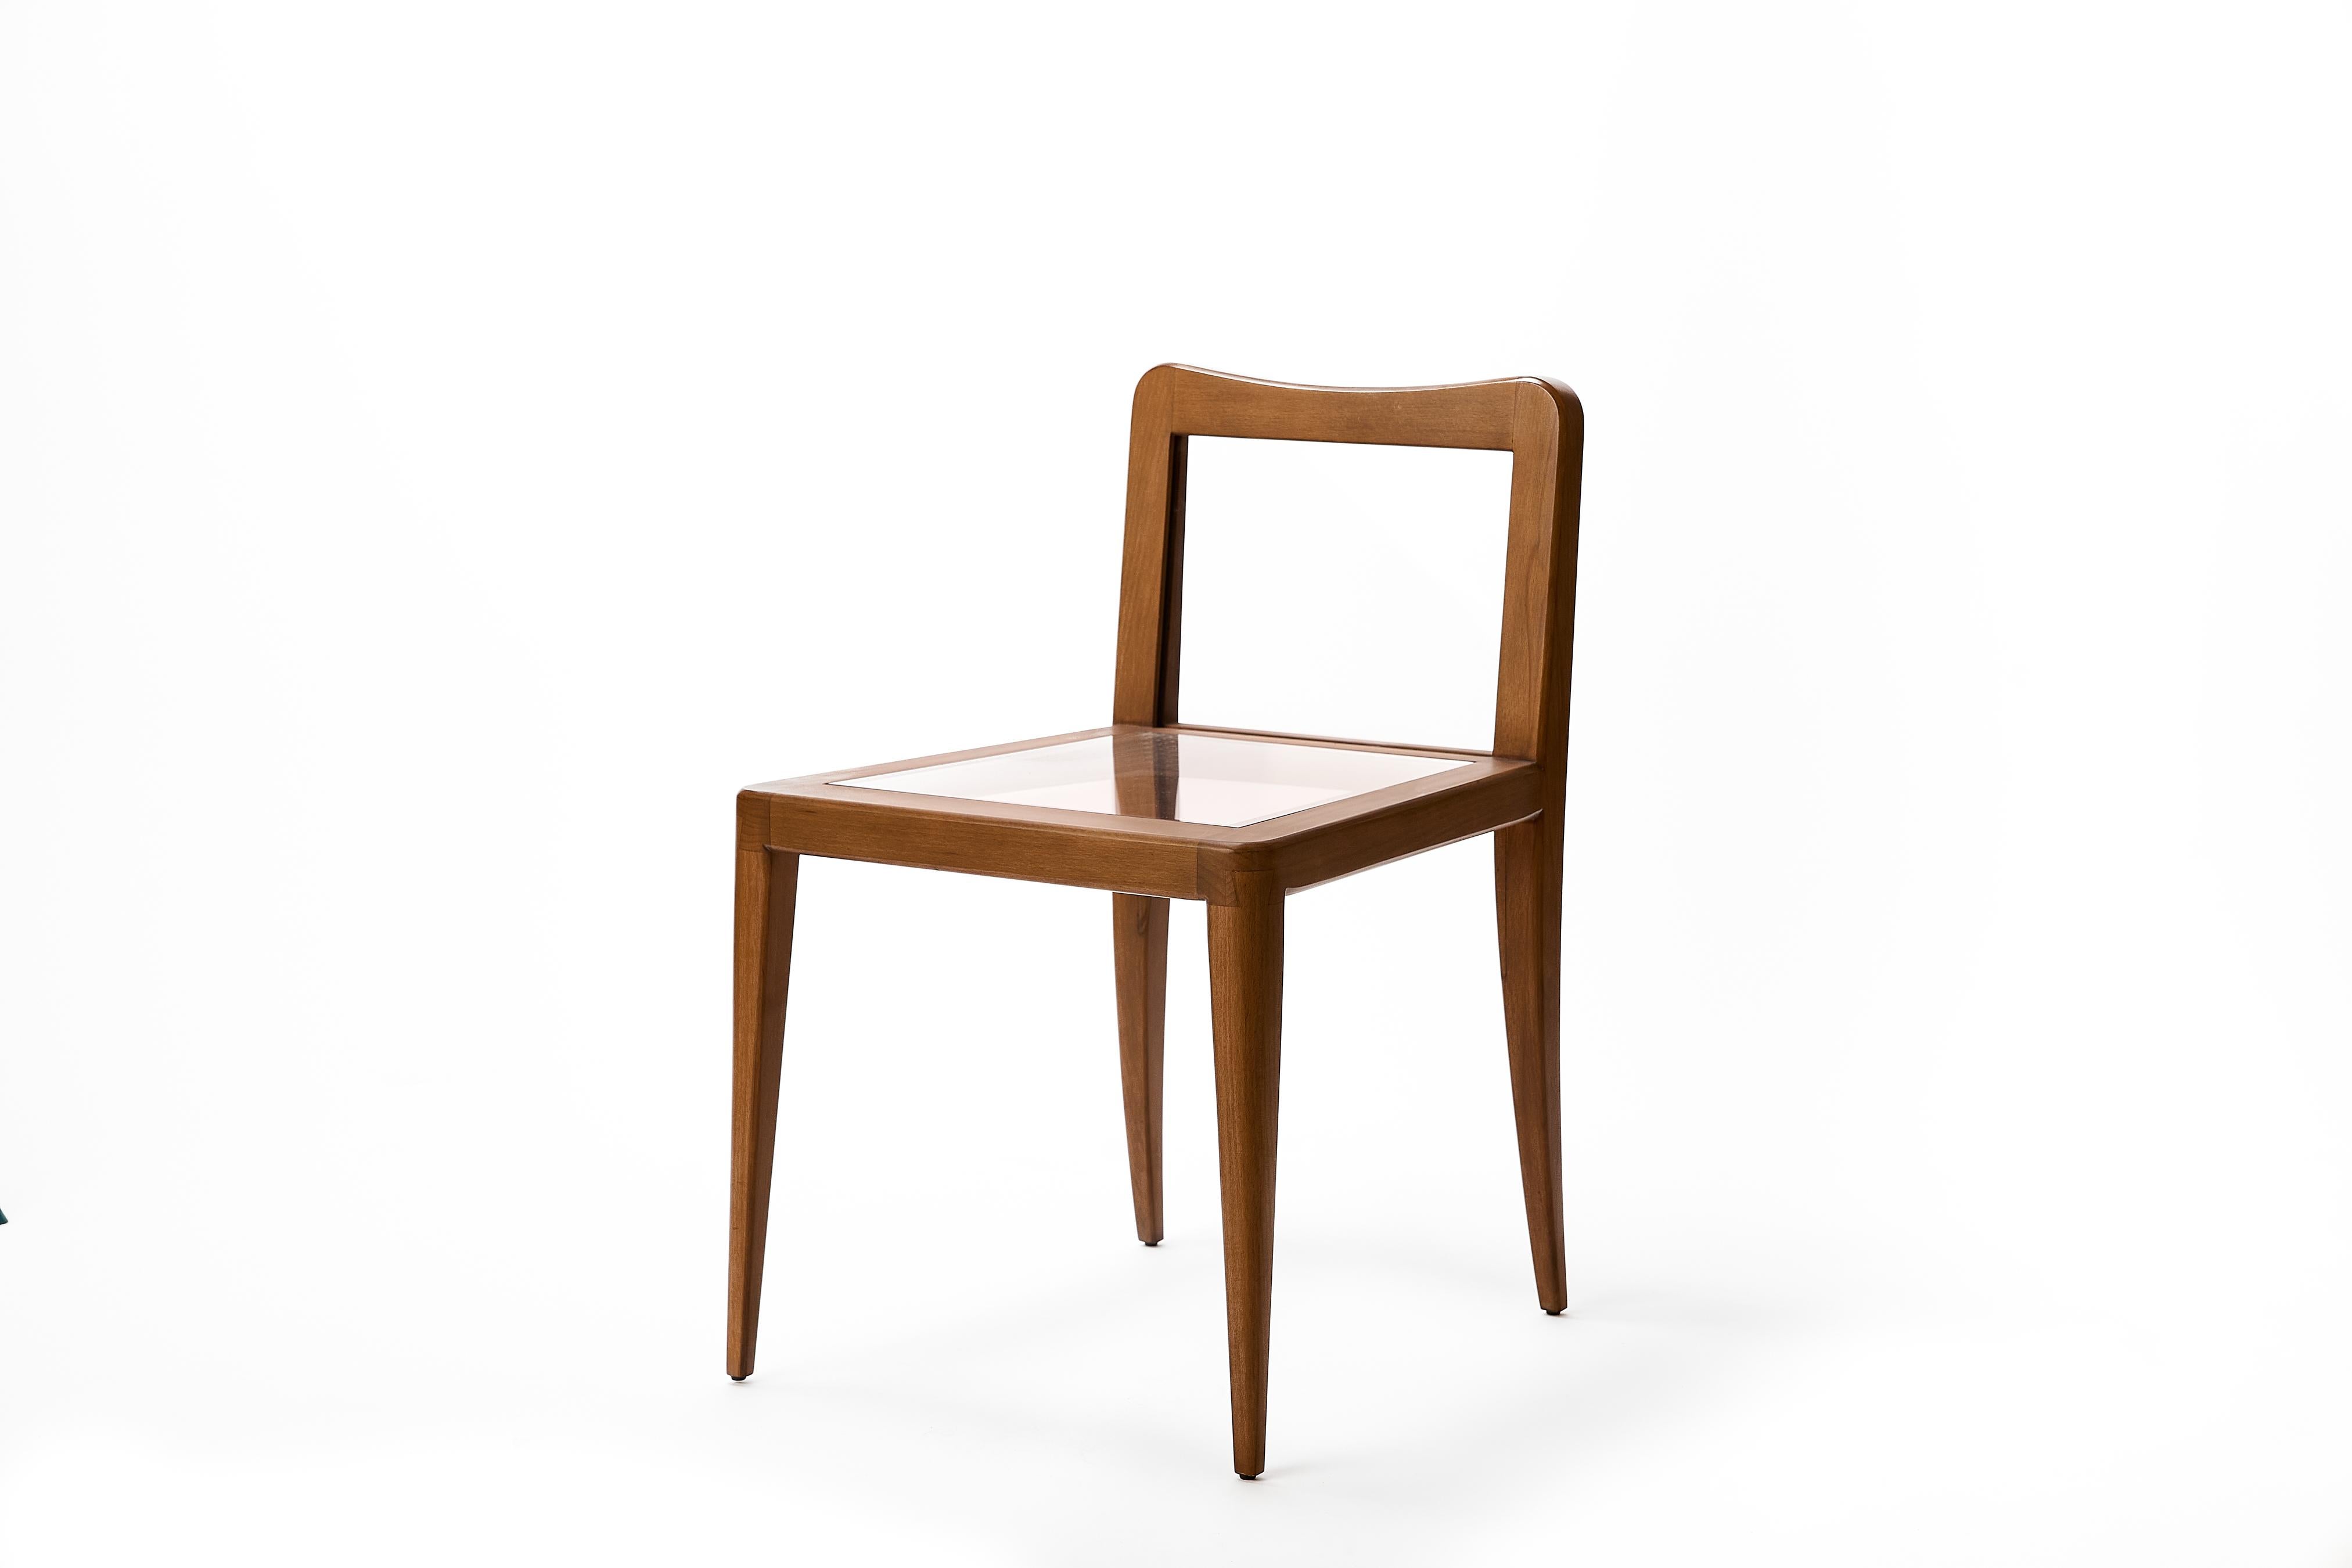 Der Petite Wood Float Chair lässt die Grenzen zwischen Kunst und Möbel verschwimmen und regt zu einem inneren Dialog mit dem Betrachter an. Ist das Kunst oder kann ich darin sitzen? Beides. Der breite und kantige, loungeartige Rahmen aus massivem